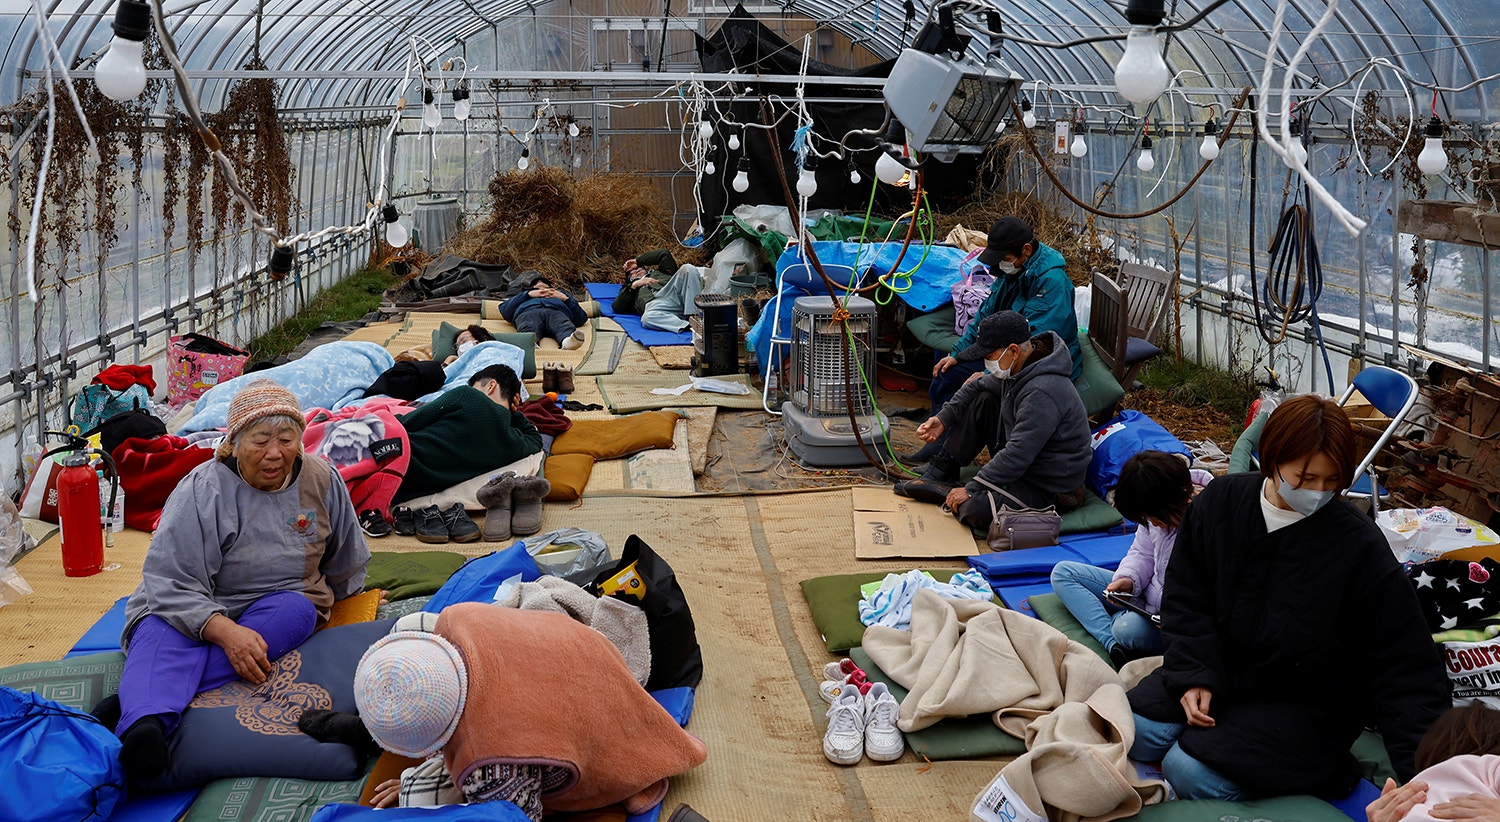  Pessoas descansam numa estufa convertida em centro de abrigo, em Wajima, 2 de janeiro | Foto: Kim Kyung-Hoon - Reuters 